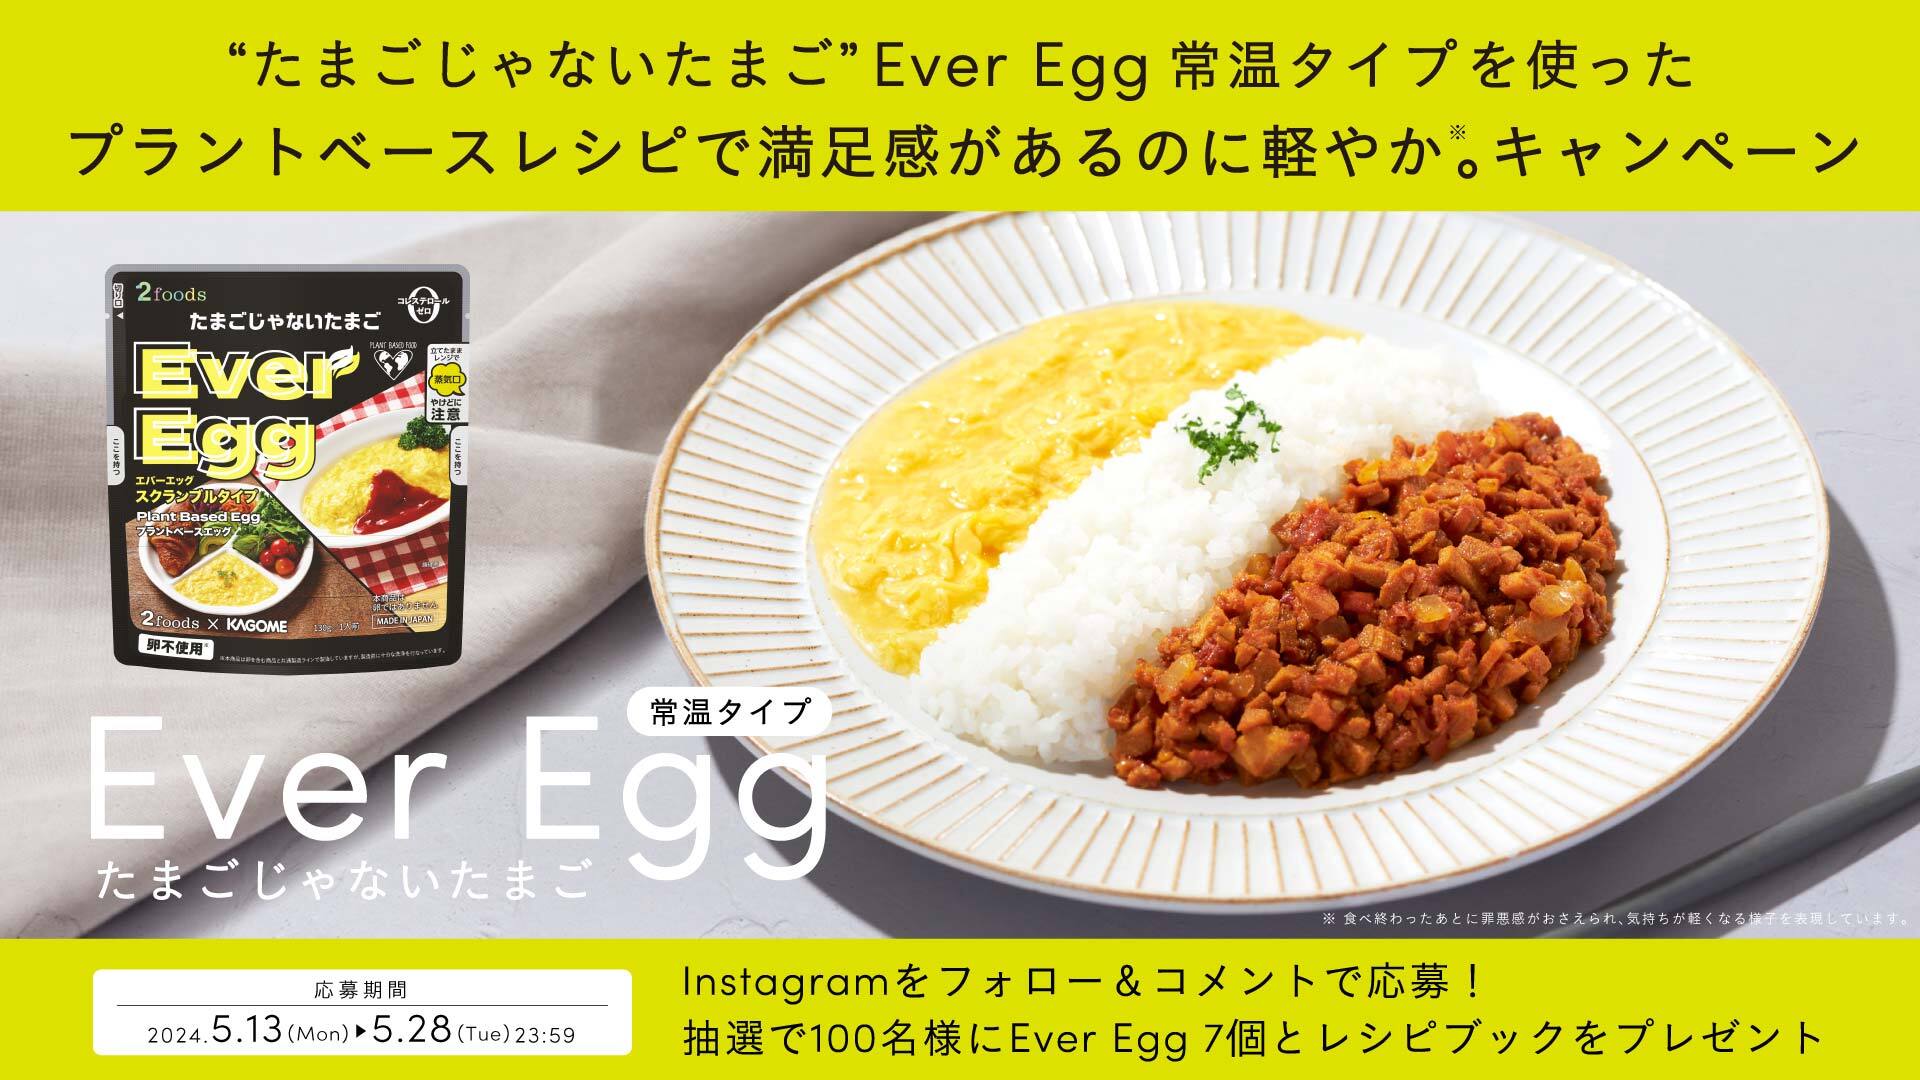 「“たまごじゃないたまご”Ever Egg を使った プラントベースレシピで、満足感があるのに軽やか。」キャンペーン